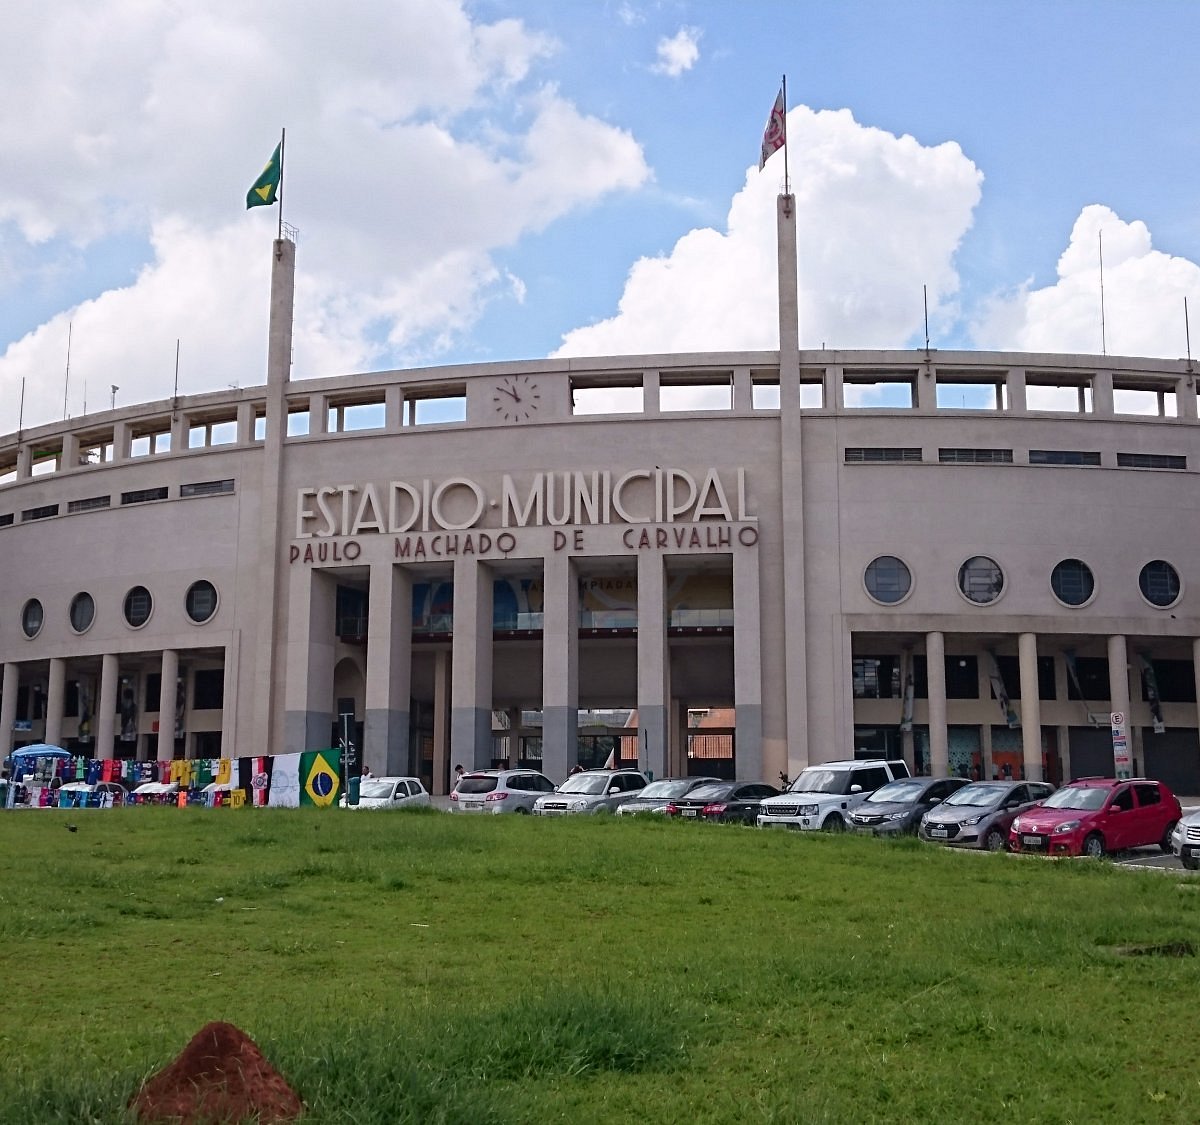 Mineirão Stadium in São Luiz - Tours and Activities